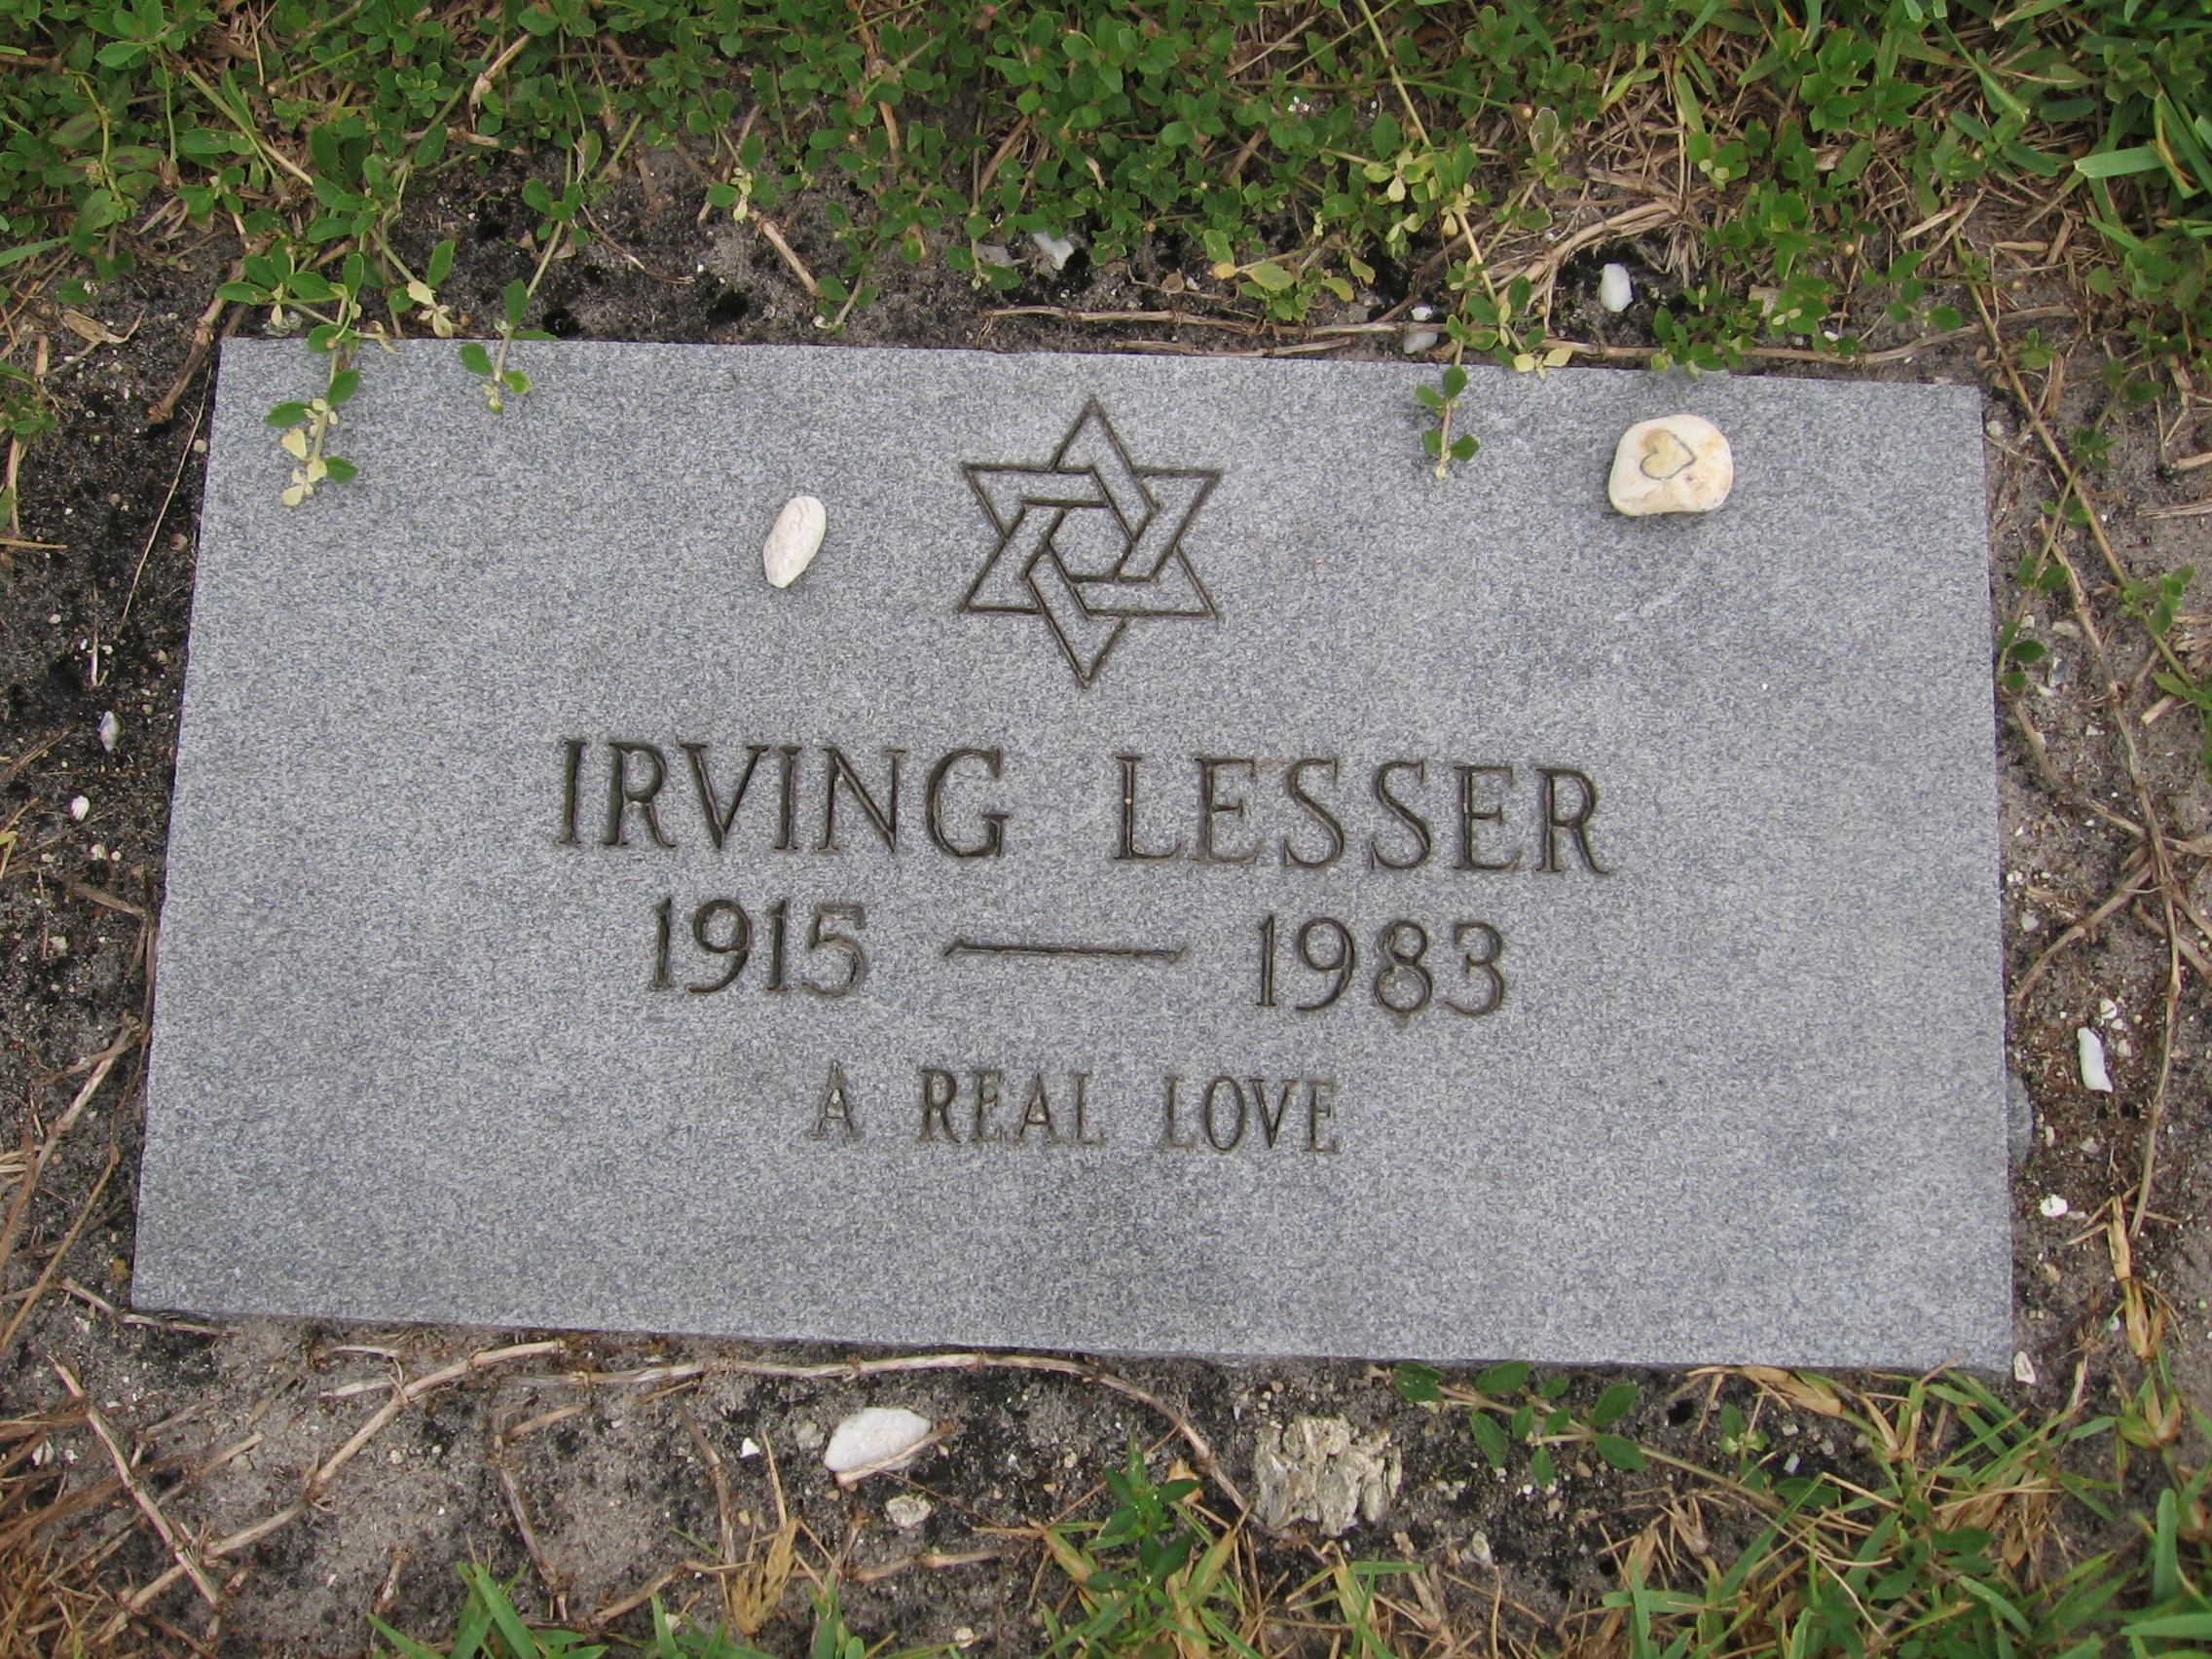 Irving Lesser